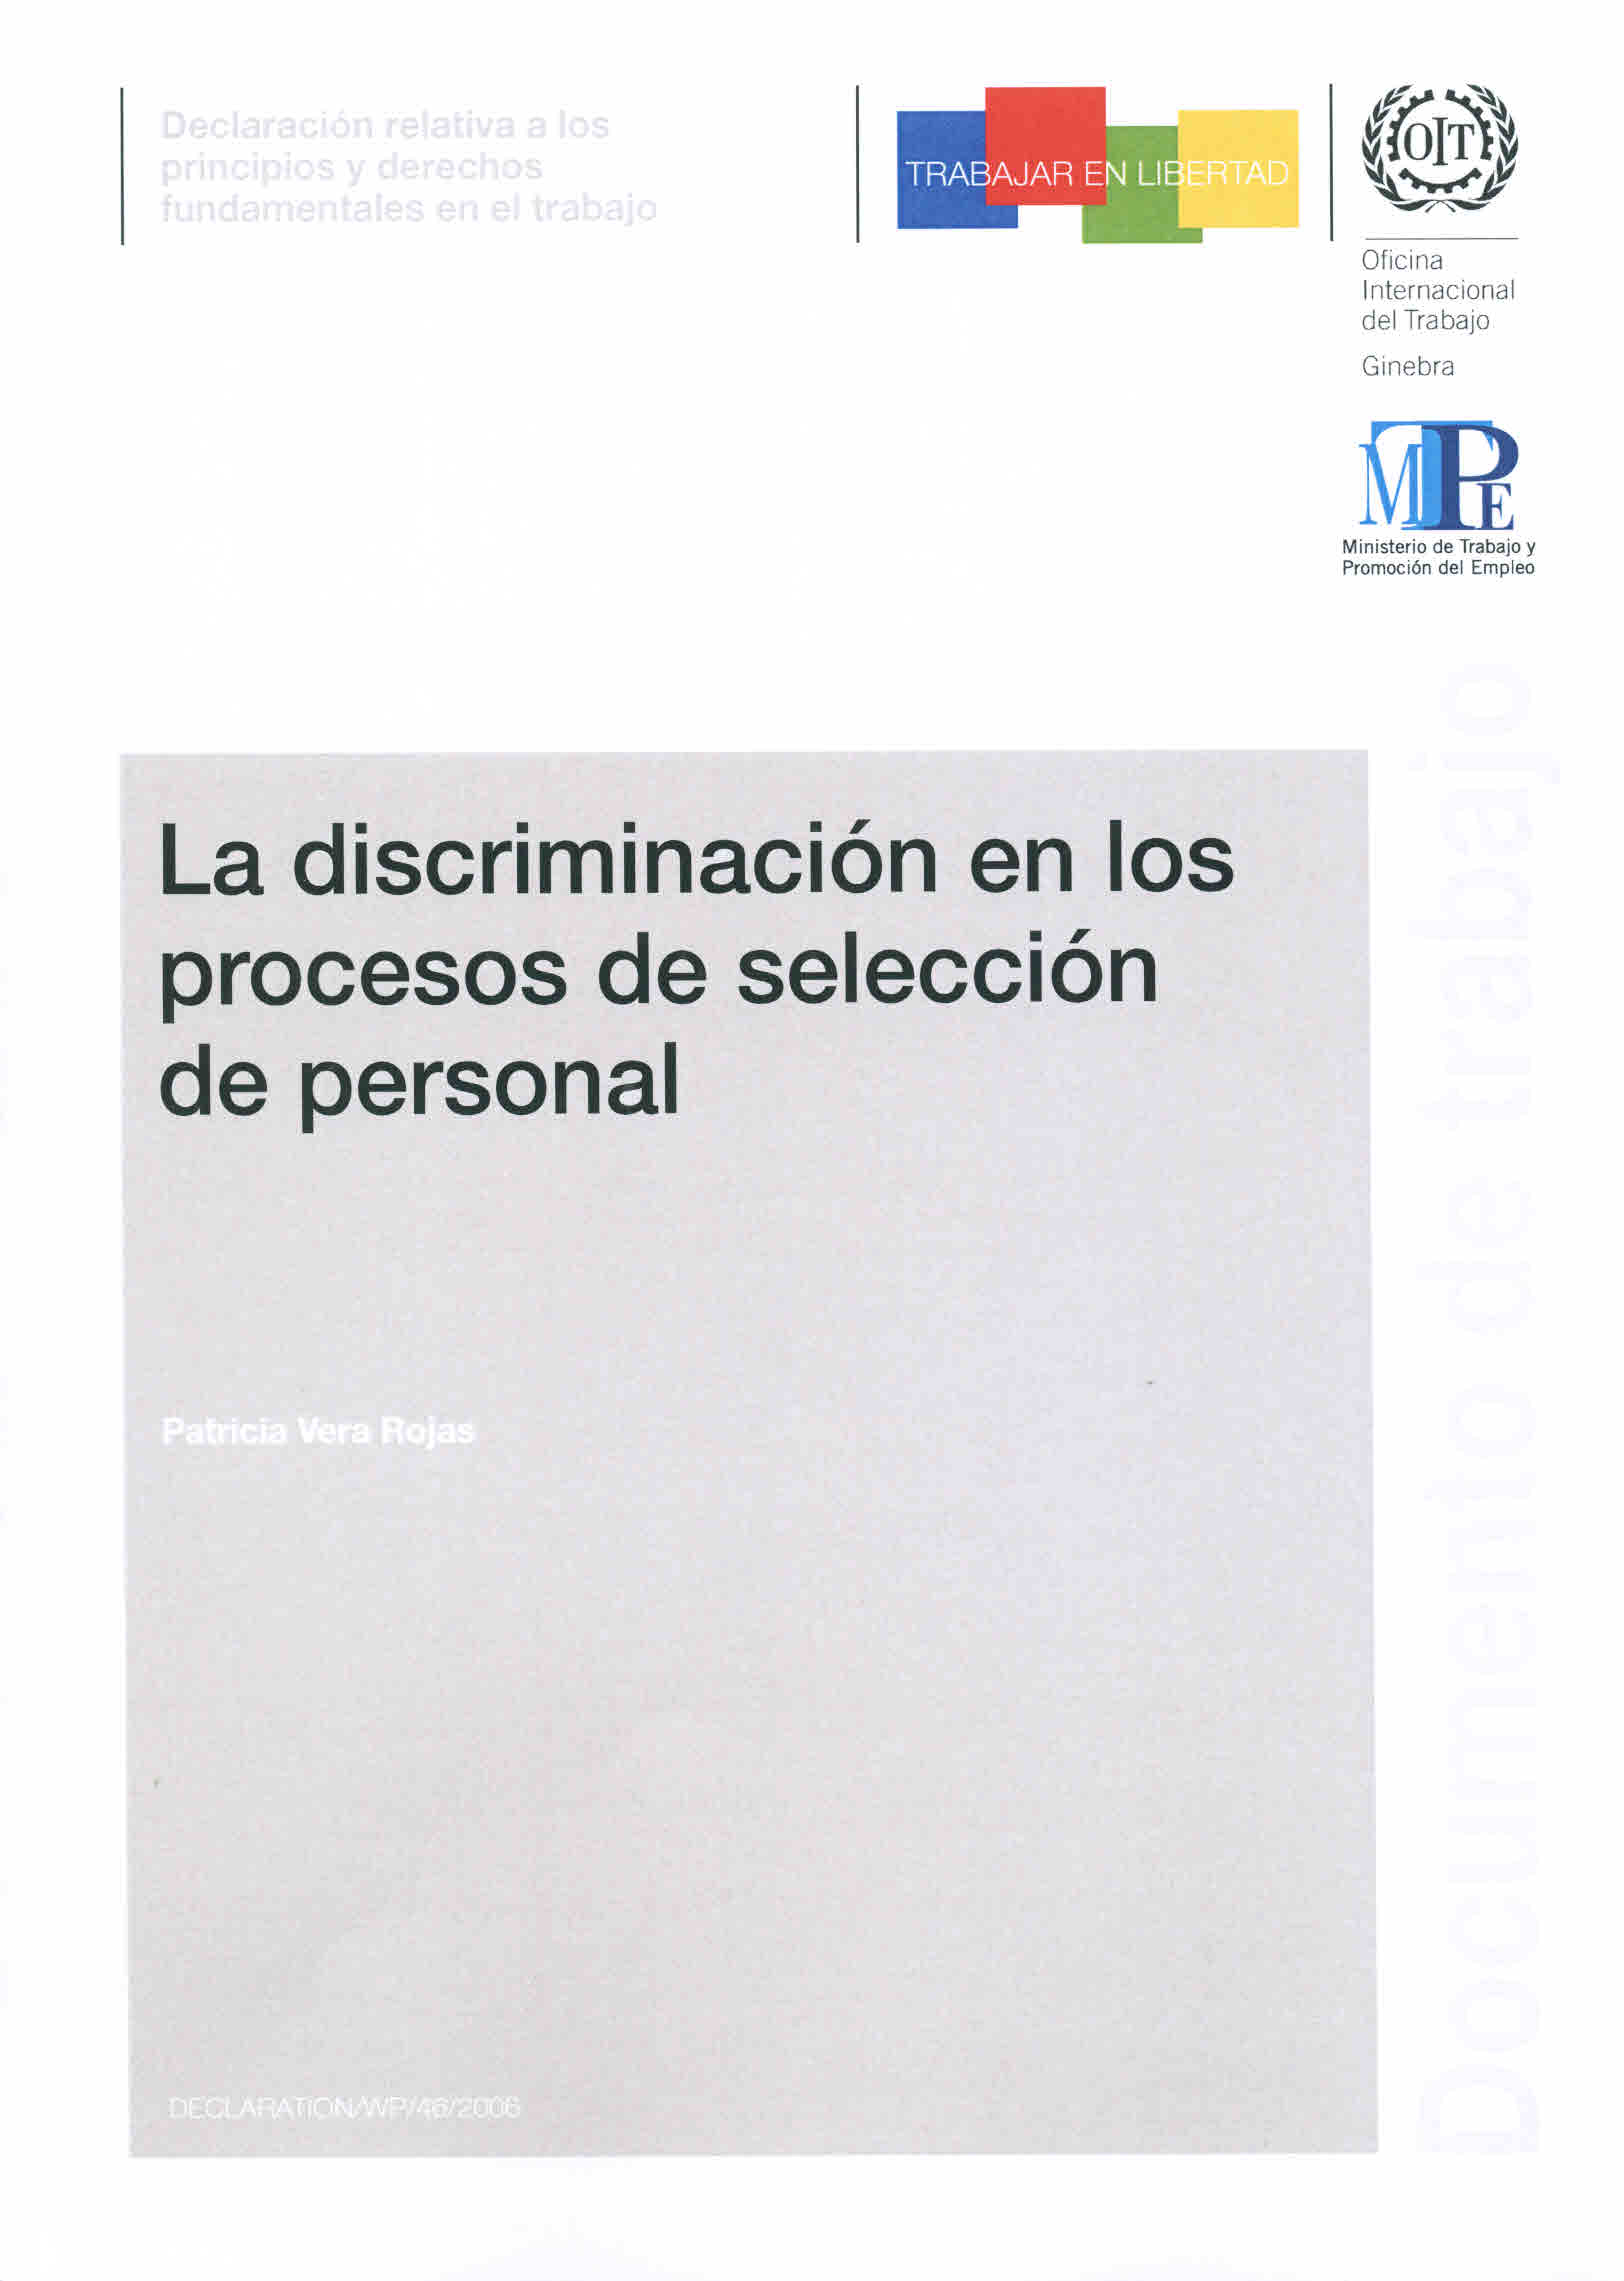 La discriminación en los procesos de selección de personal.